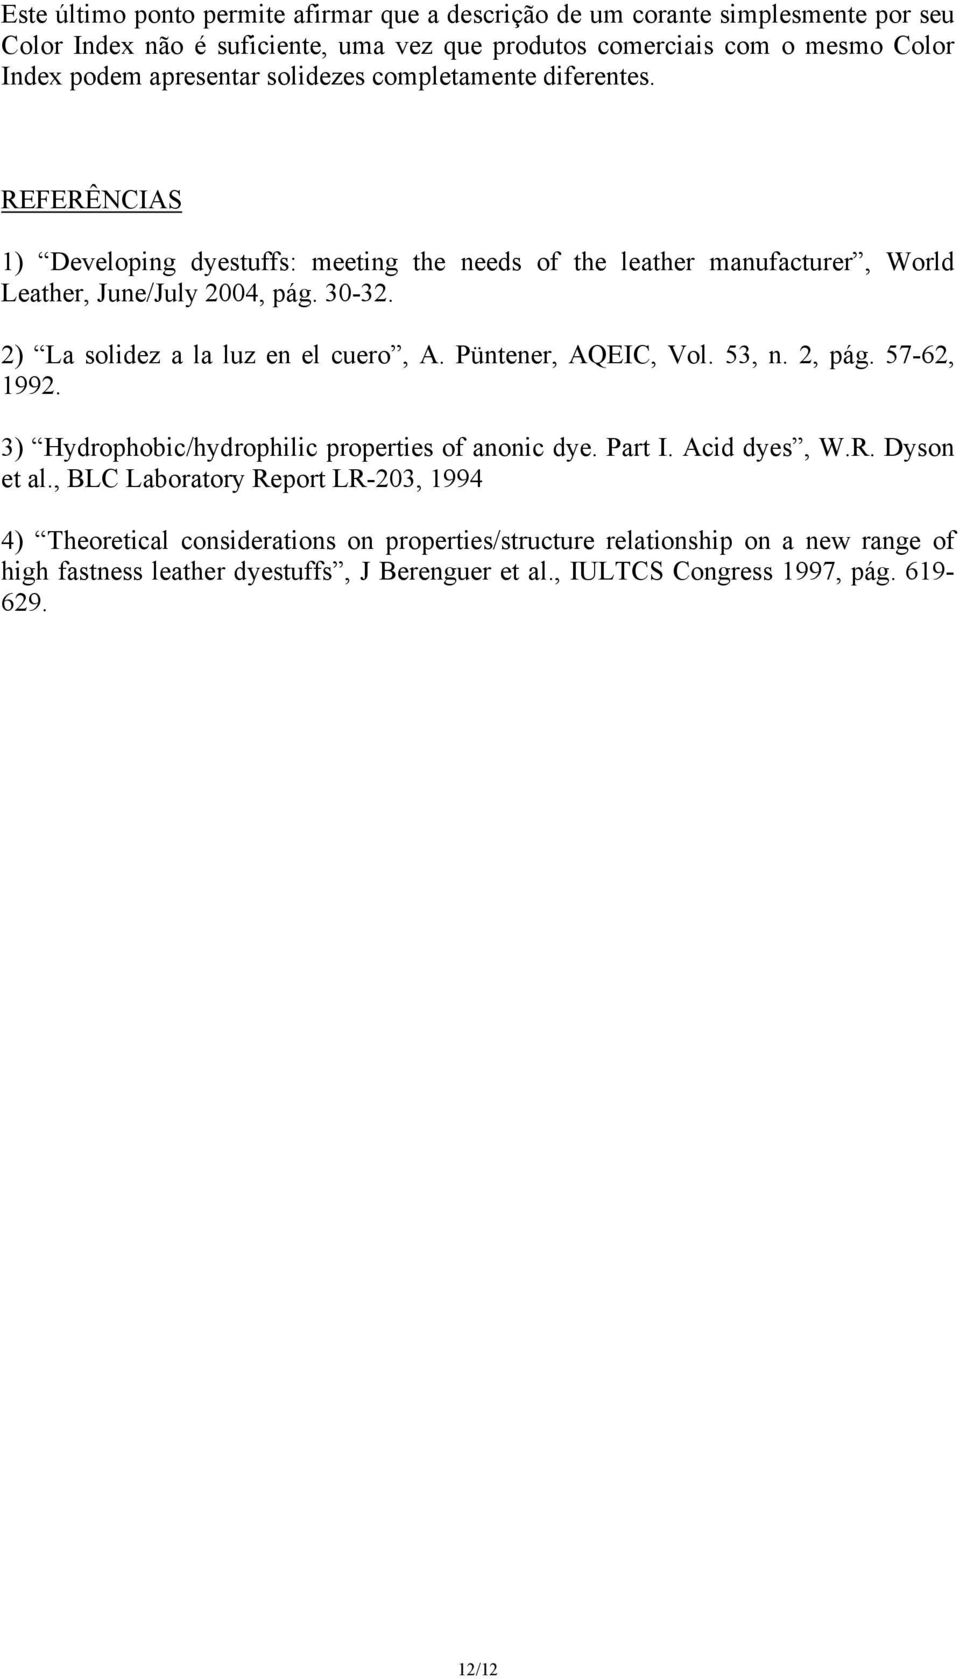 2) La solidez a la luz en el cuero, A. Püntener, AQEI, Vol. 53, n. 2, pág. 57-62, 1992. 3) ydrophobic/hydrophilic properties of anonic dye. Part I. Acid dyes, W.R. Dyson et al.